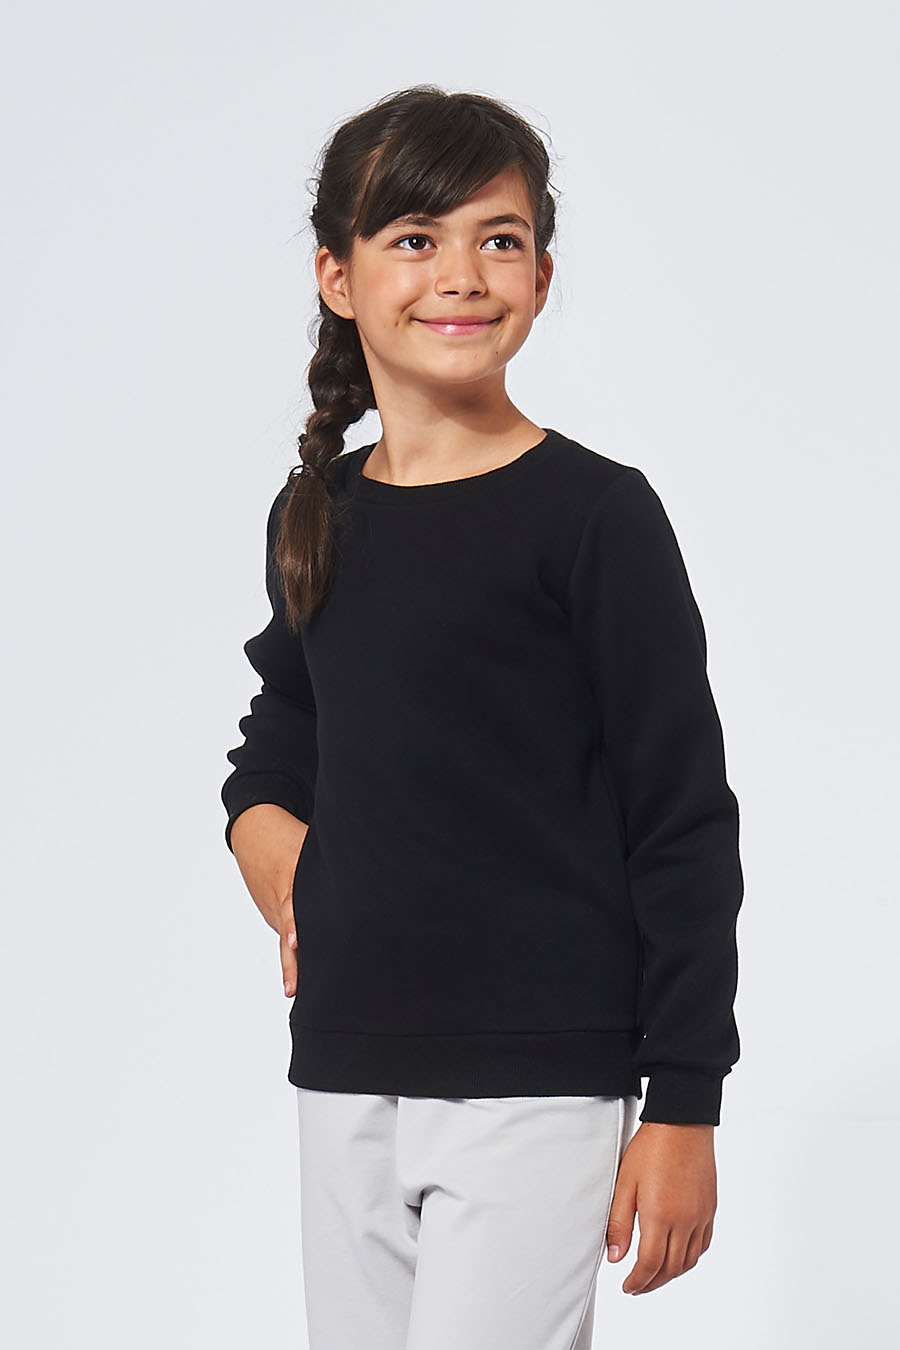 Sweatshirt made in France en molleton gratté ARMAND noir enfant qui sourit - FIL ROUGE